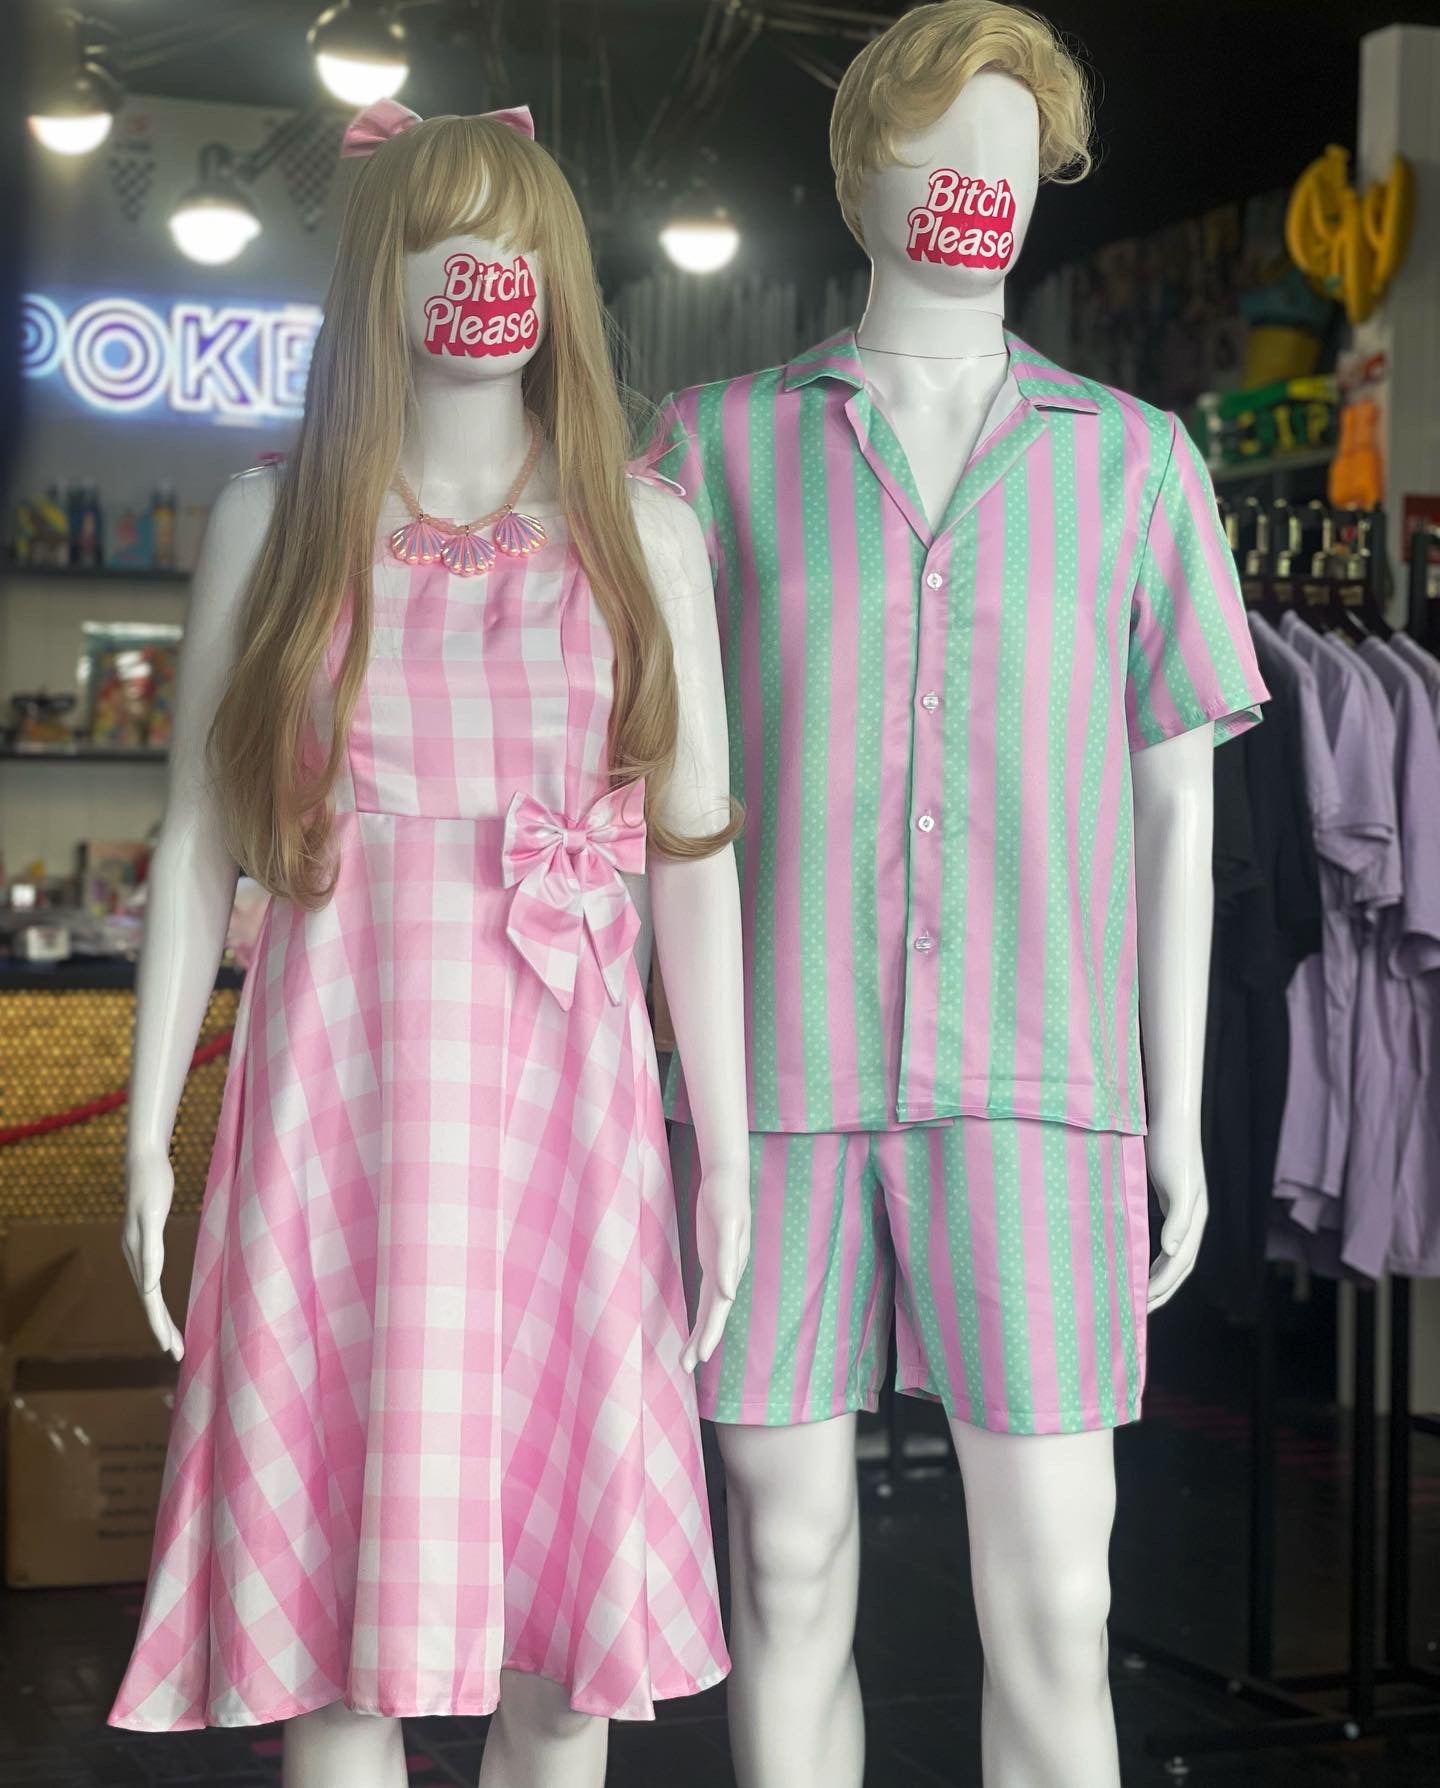 Barbie Movie Replica Outfits (Barbie & Ken)